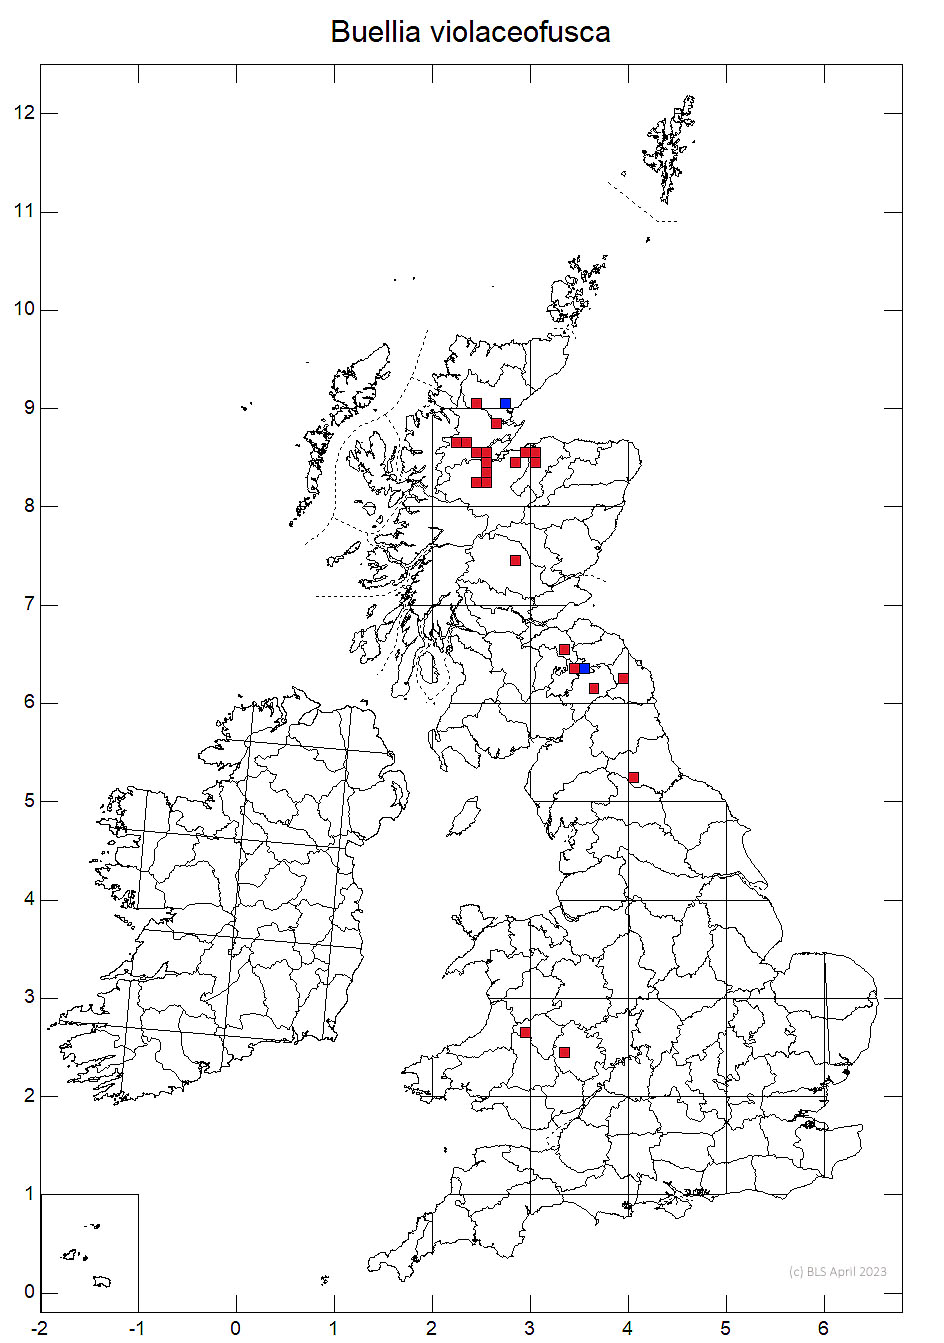 Buellia violaceofusca 10km sq distribution map